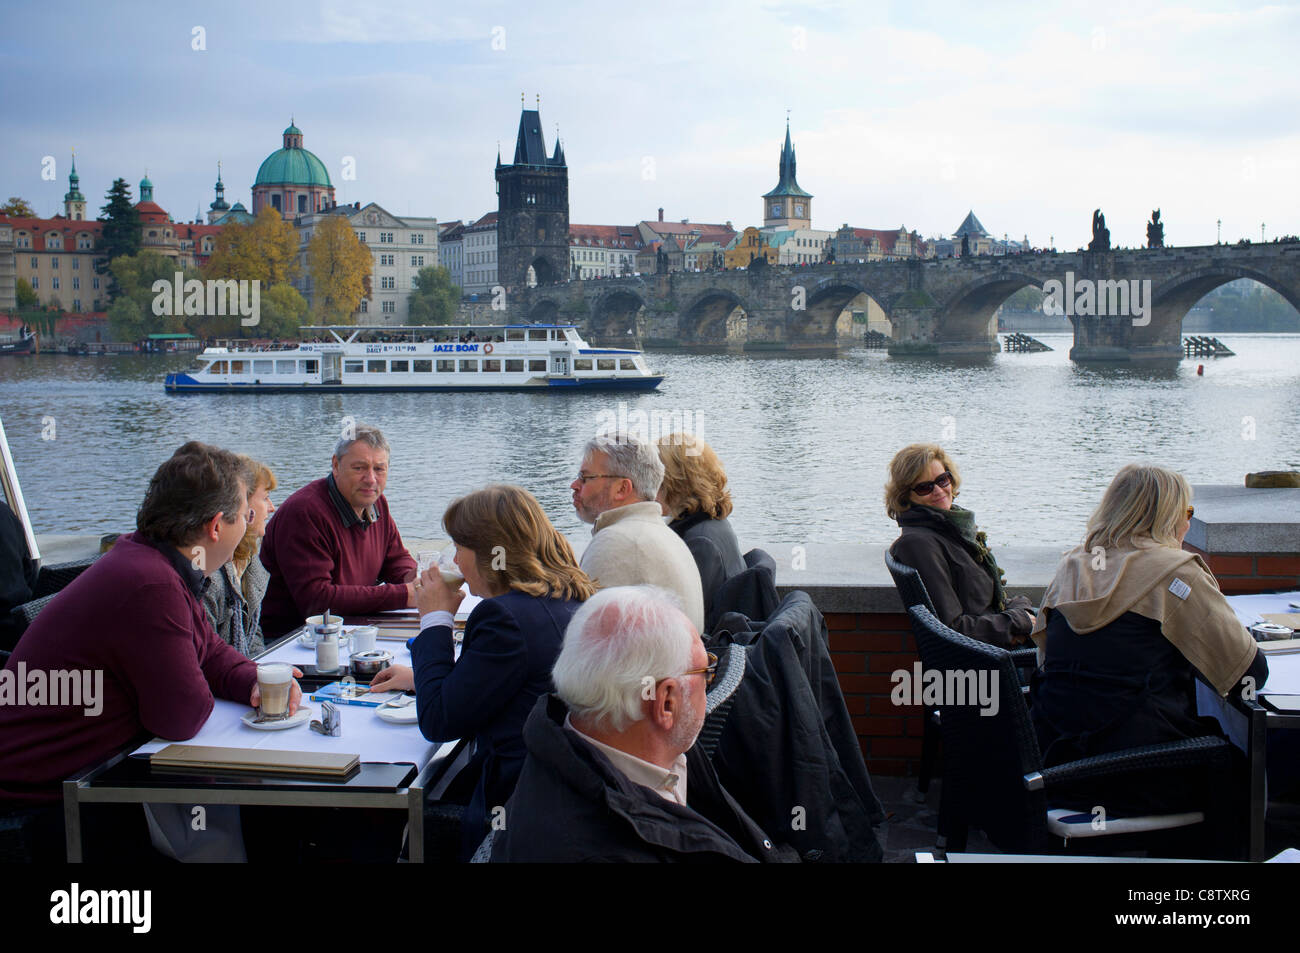 Cafe accanto al fiume Vltava a Praga nella Repubblica Ceca Foto Stock